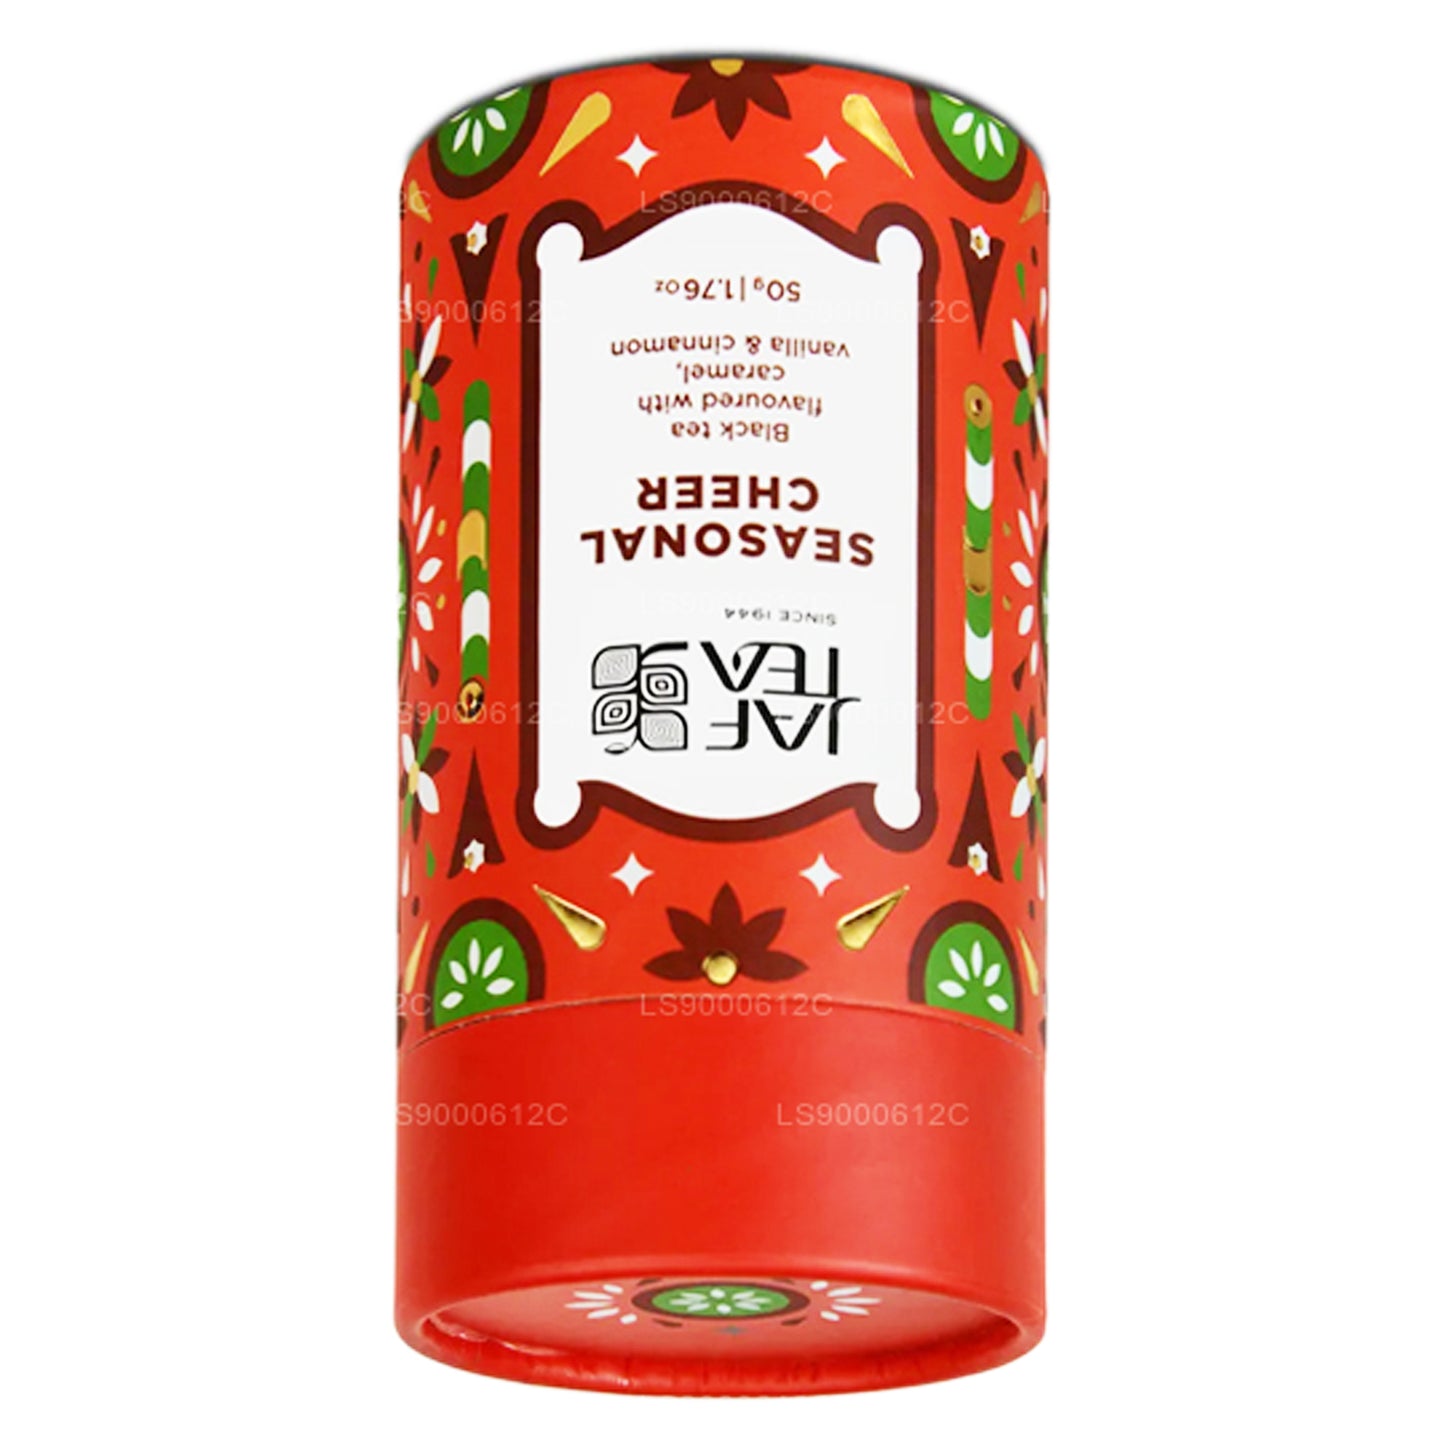 Jaf Tea Seasonal Cheer - Thé noir parfumé au caramel, à la vanille et à la cannelle (50g)